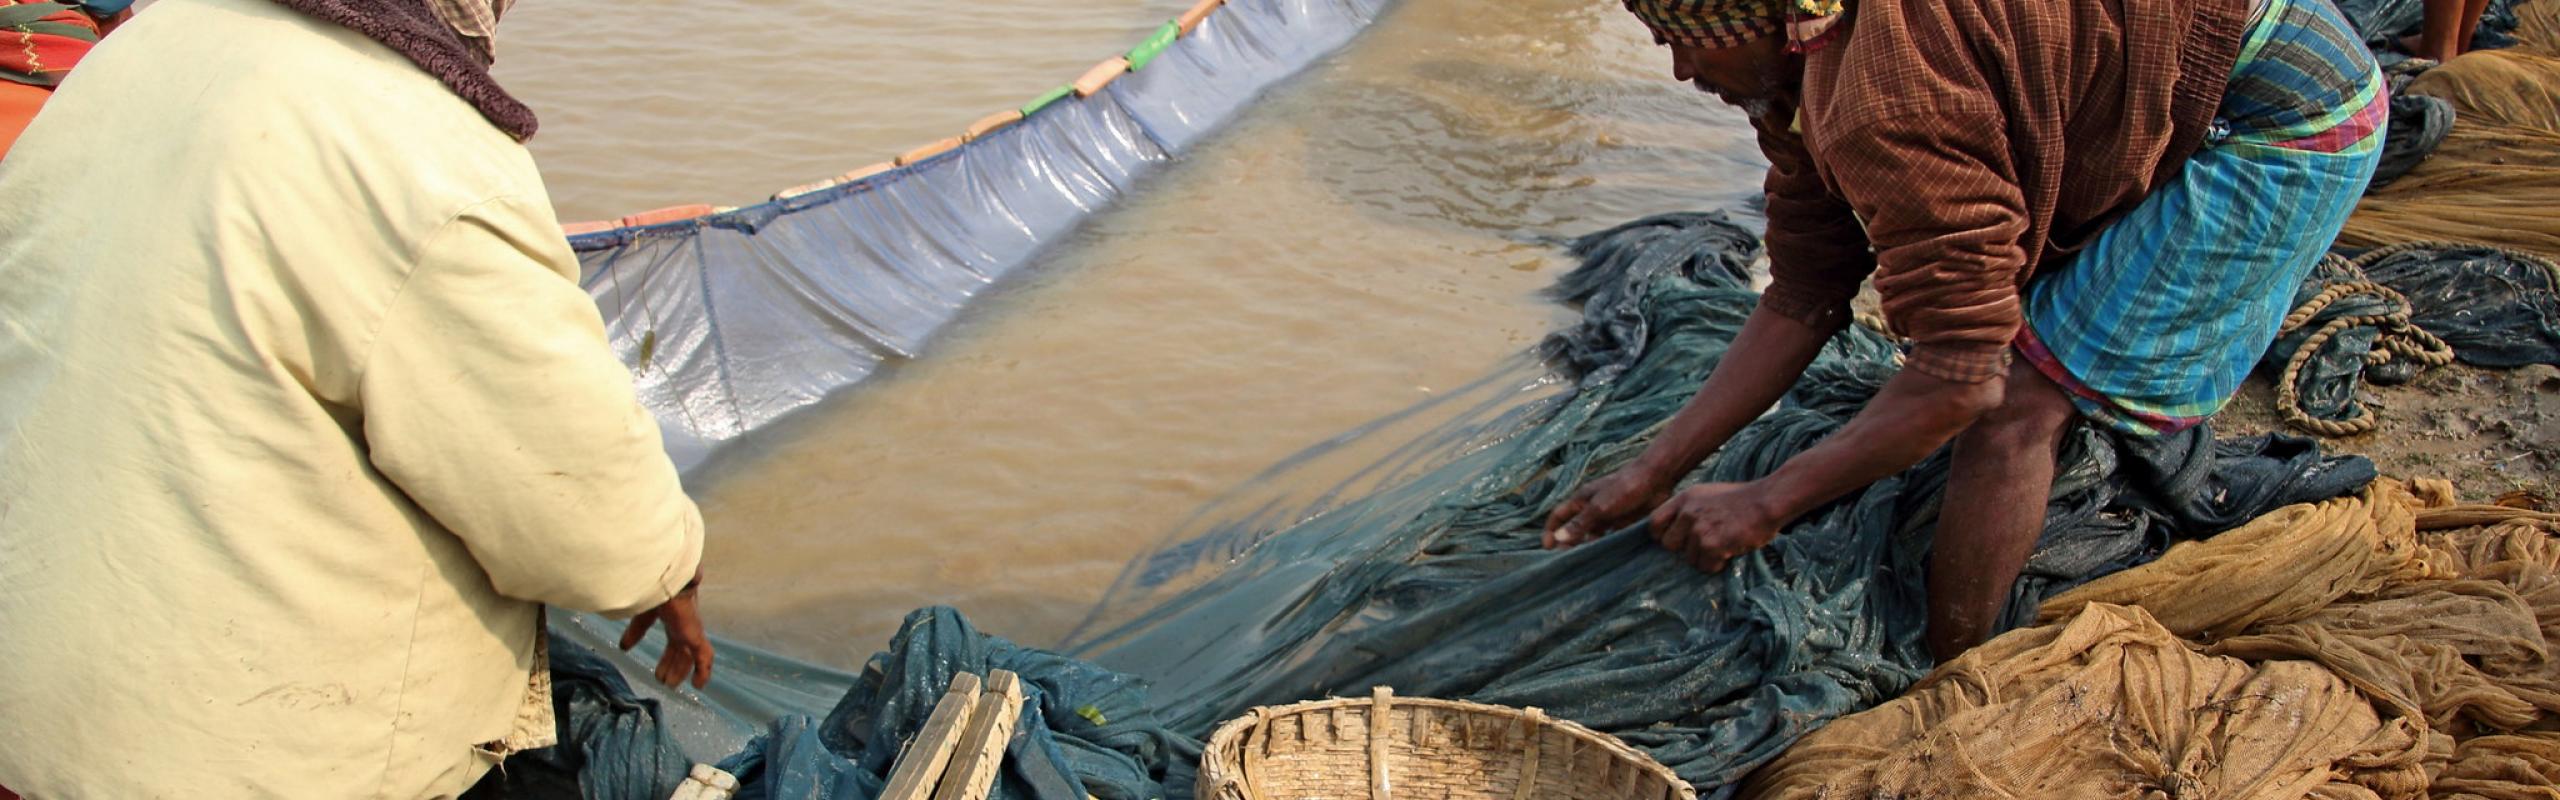 Les gens ramassent du poisson dans des filets et des paniers d'une pêcherie gérée par la communauté à Sunamganj, au Bangladesh